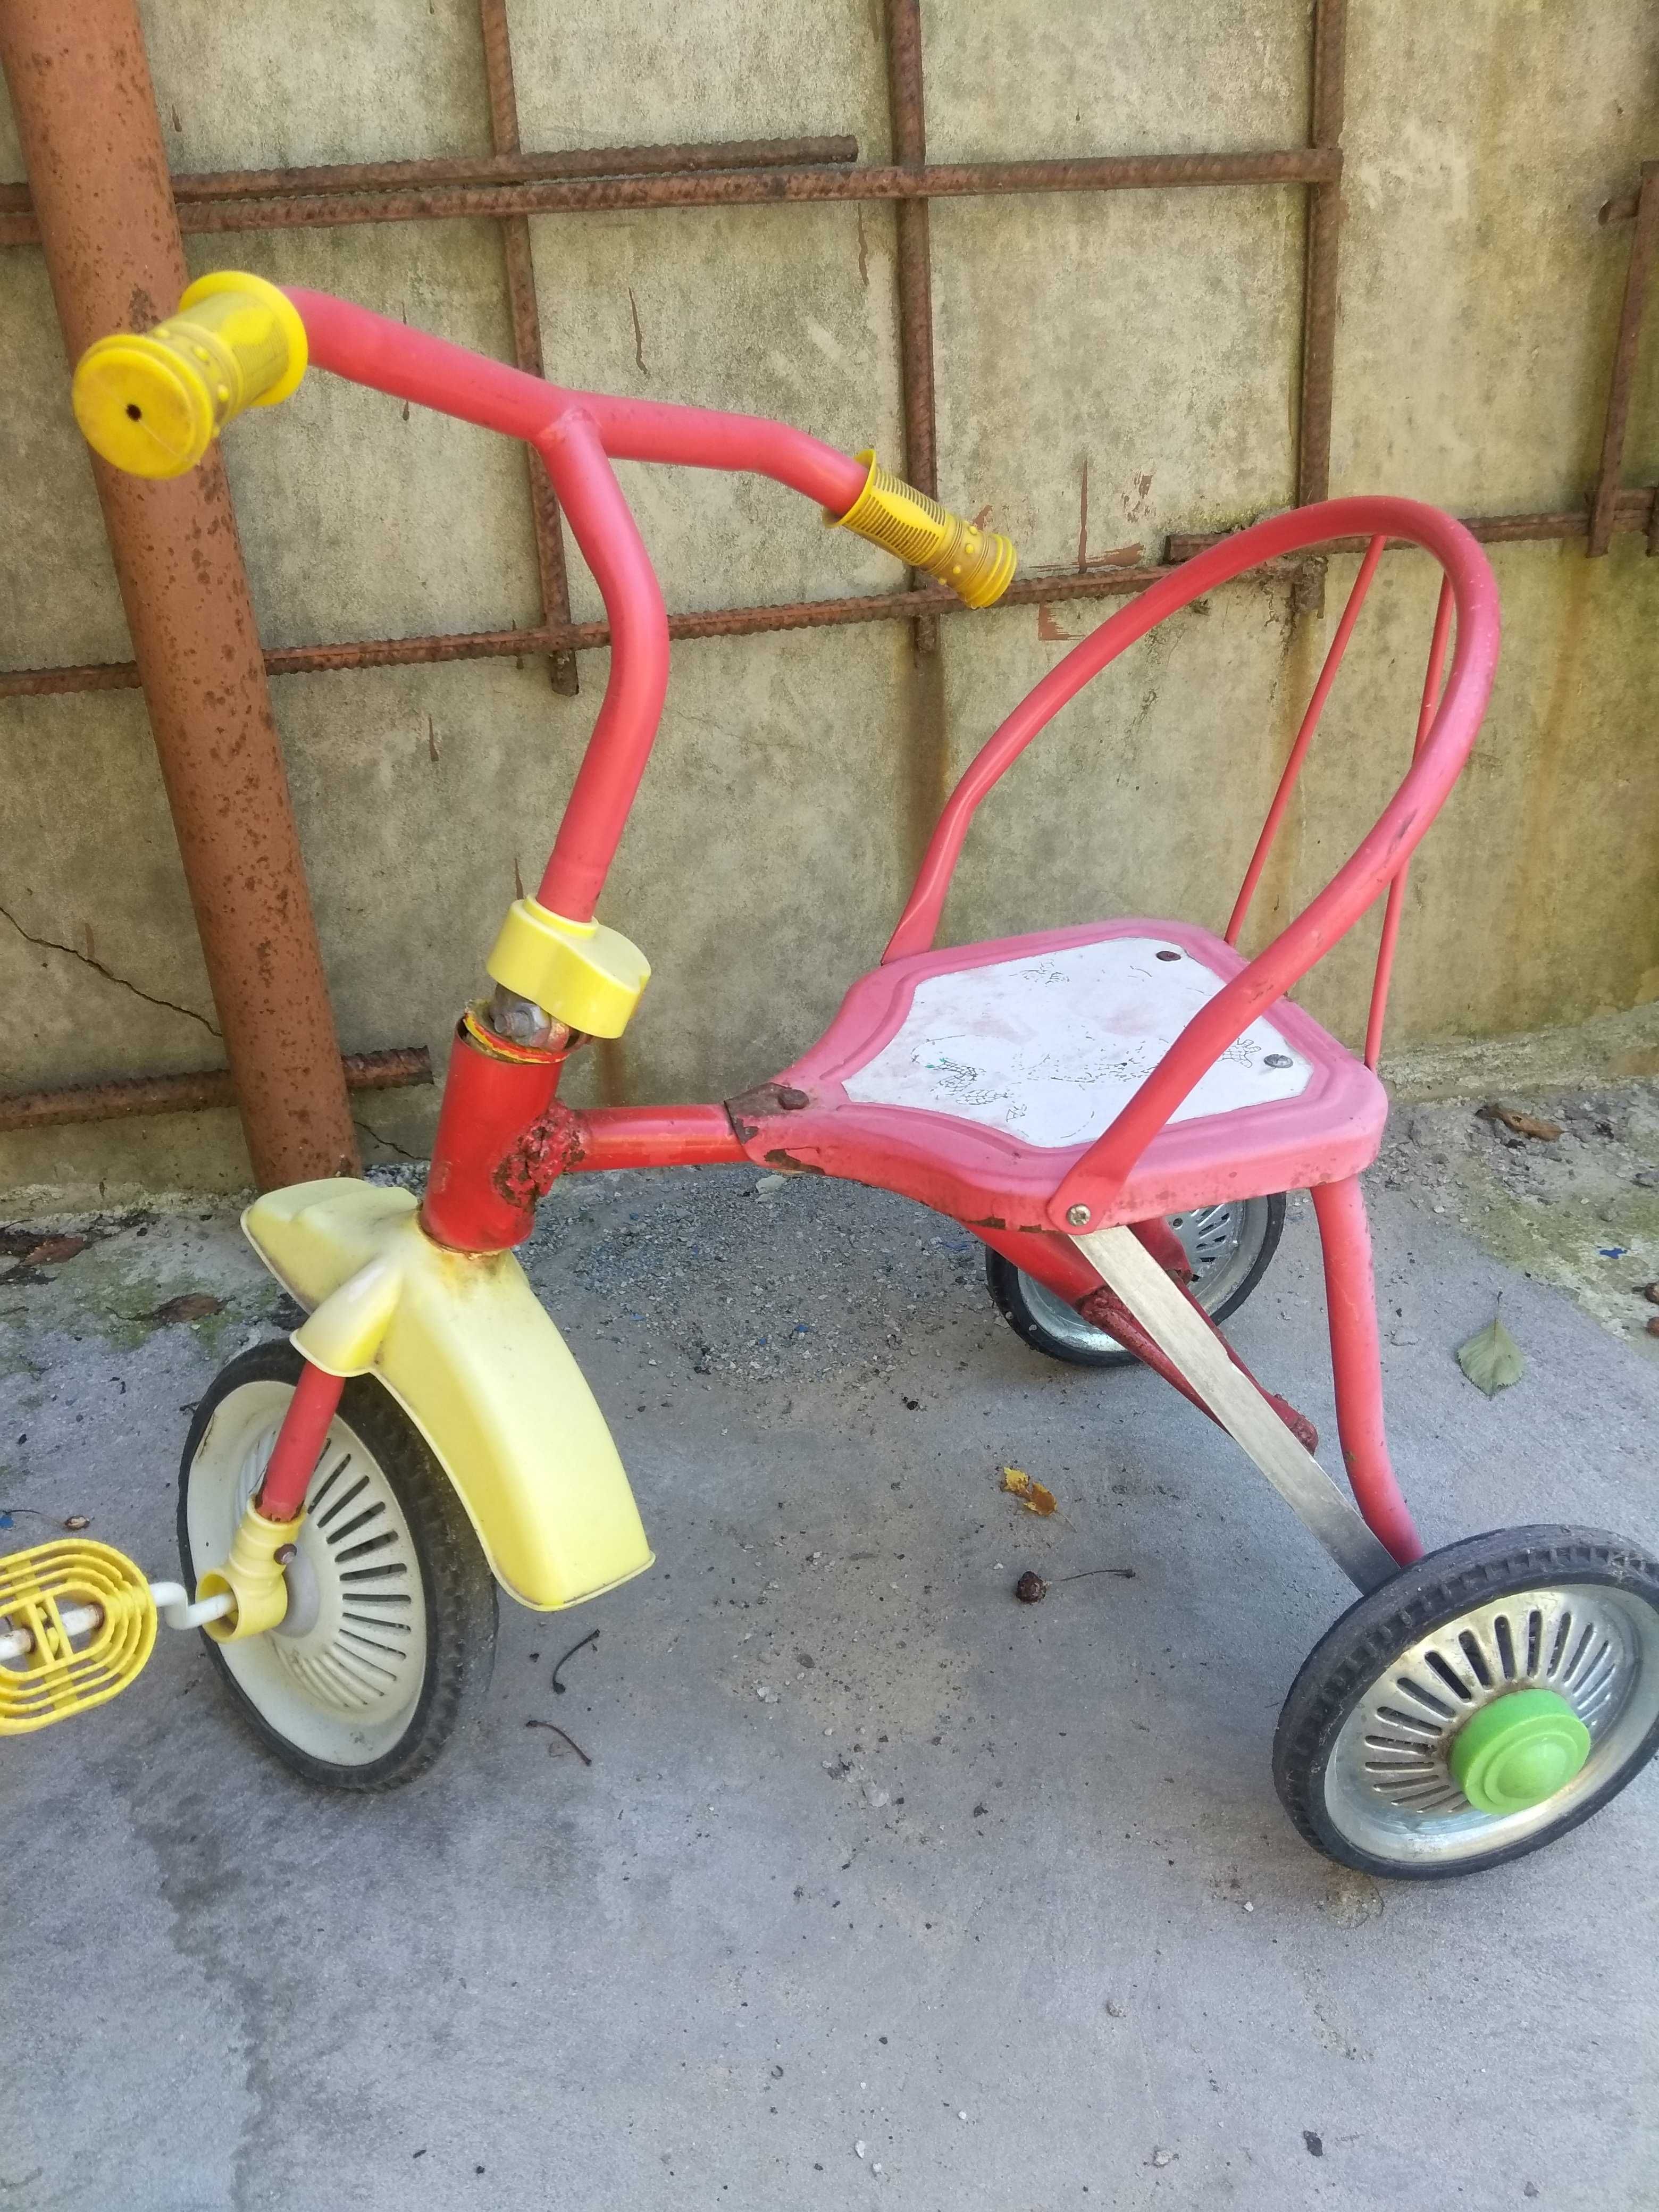 Продам трёх колесный детский велосипед